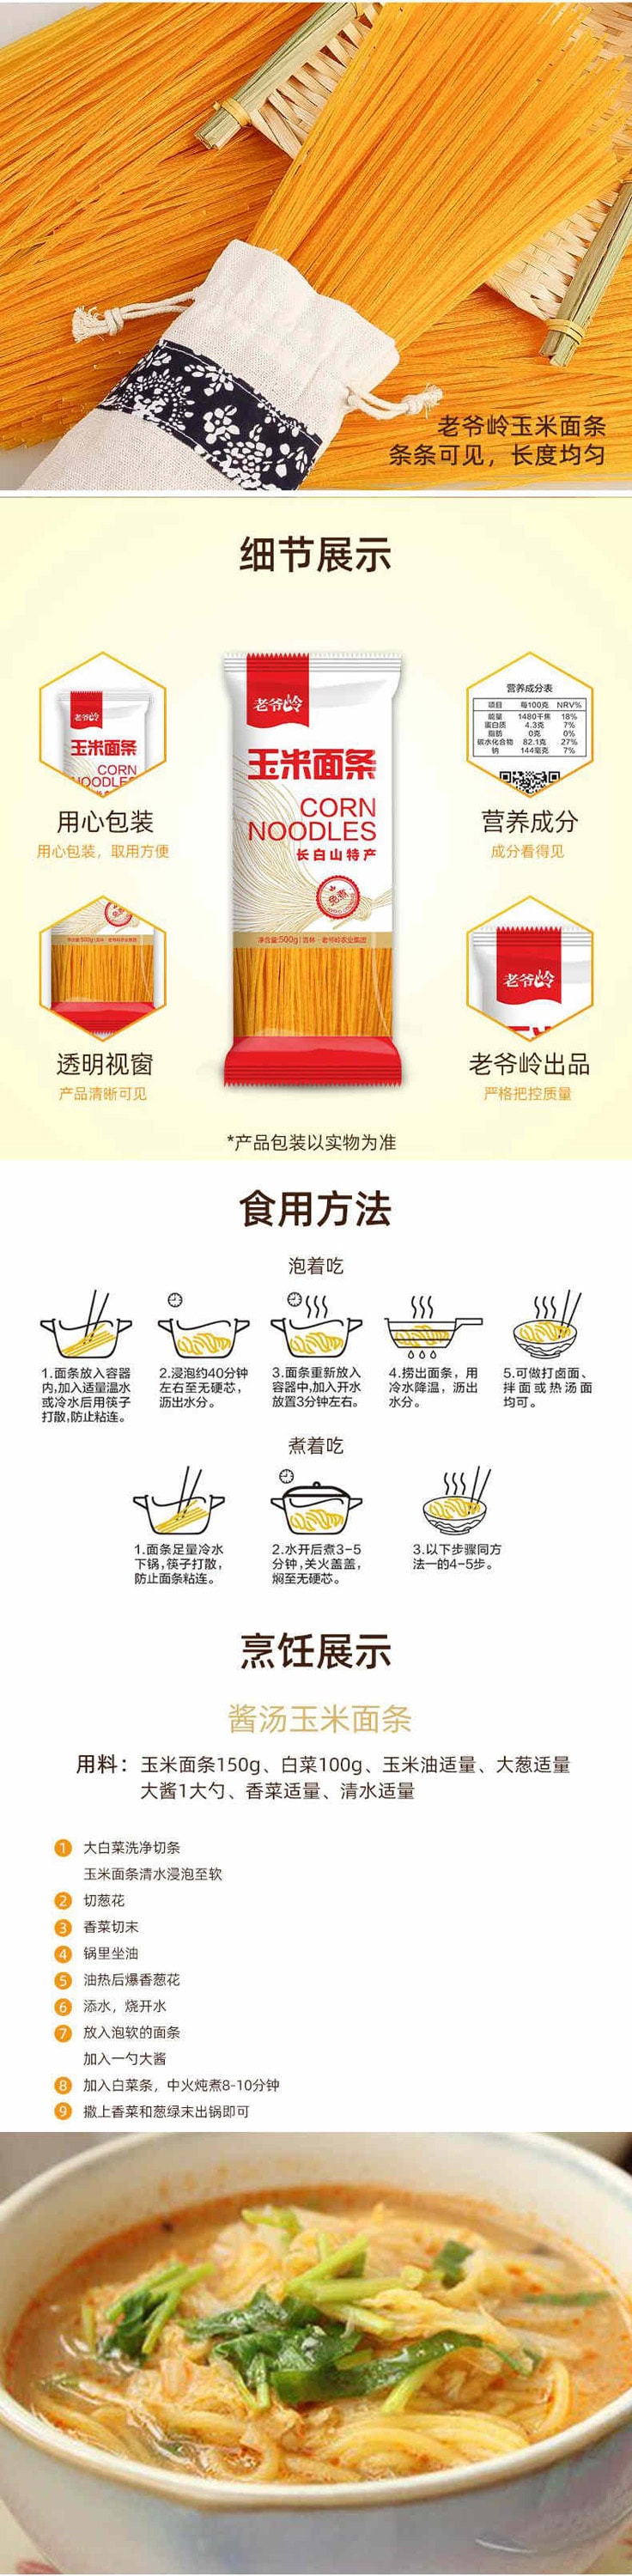 中国老爷岭  玉米面条 500g 免煮方便 天然无添加